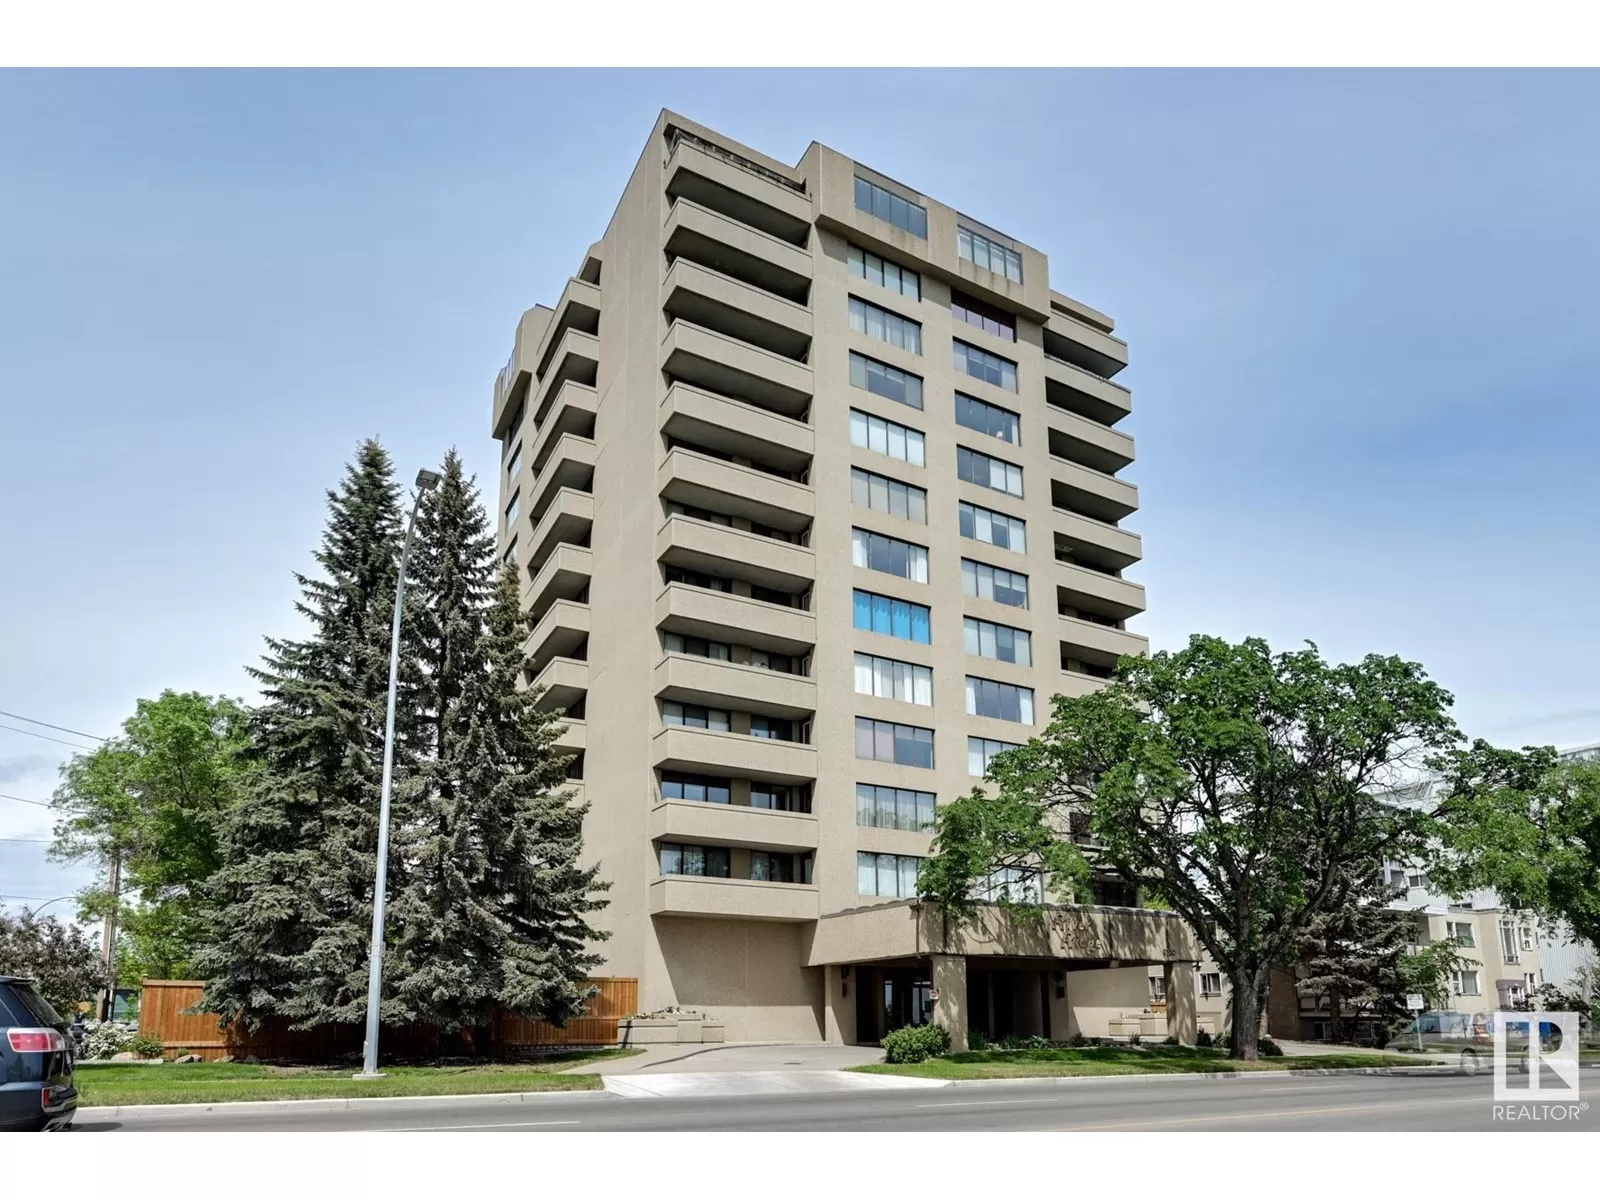 Apartment for rent: #306 8340 Jasper Av Nw, Edmonton, Alberta T5H 4C6